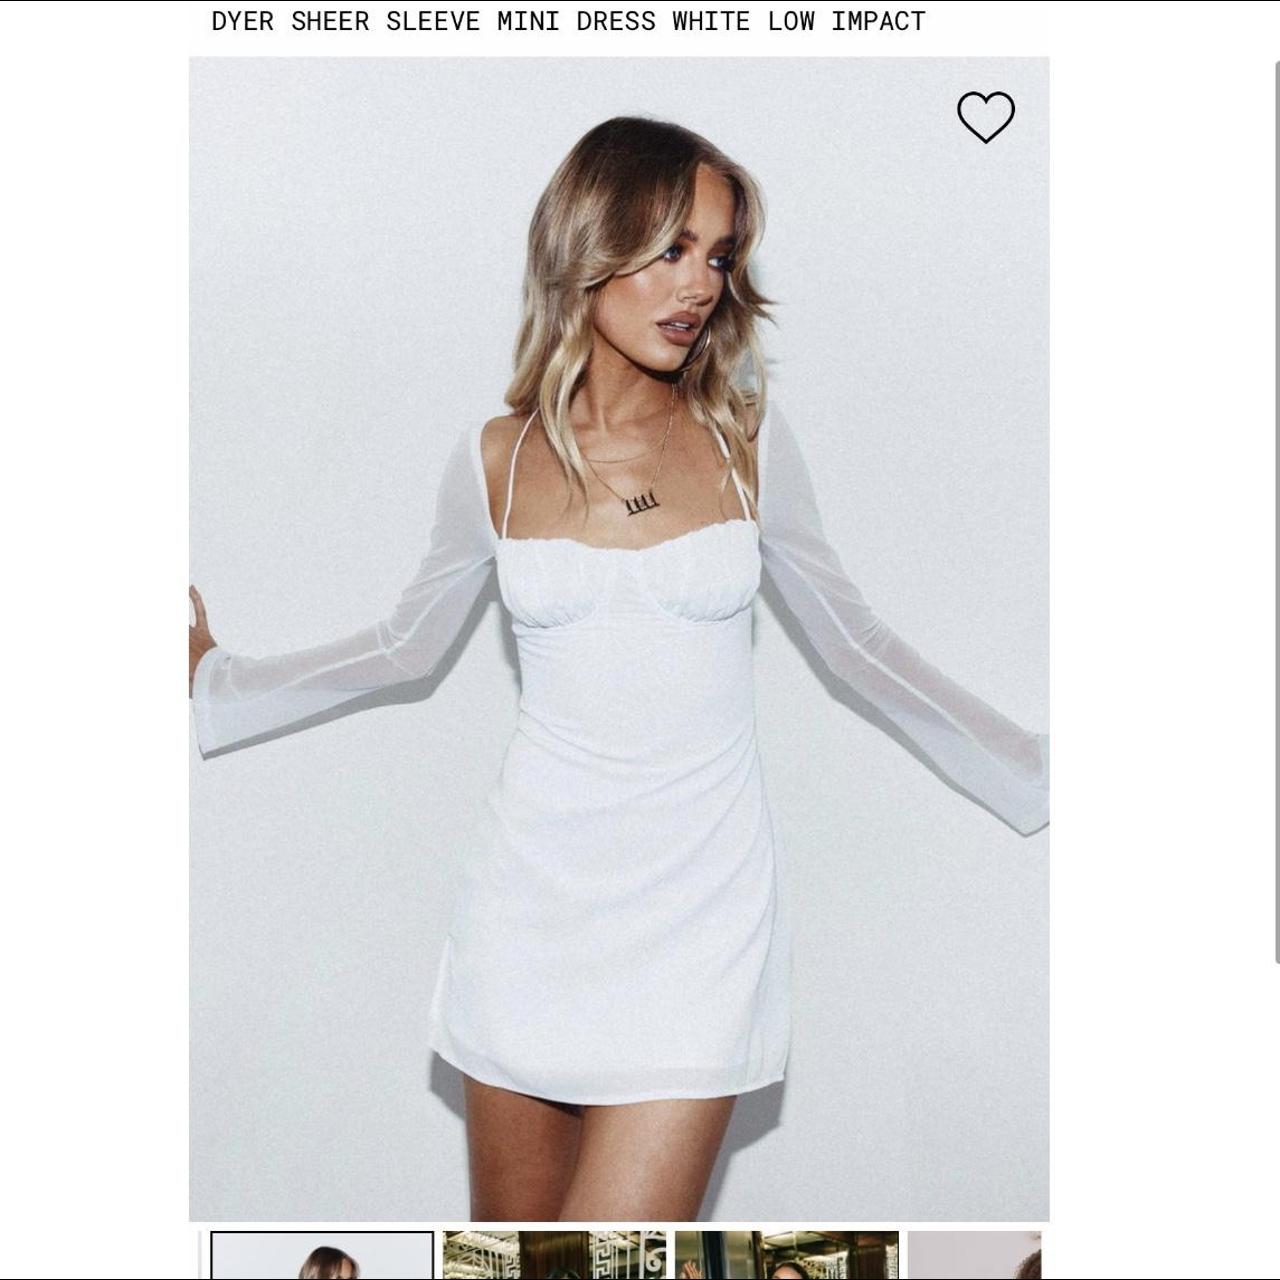 Dyer Sheer Sleeve Mini Dress White